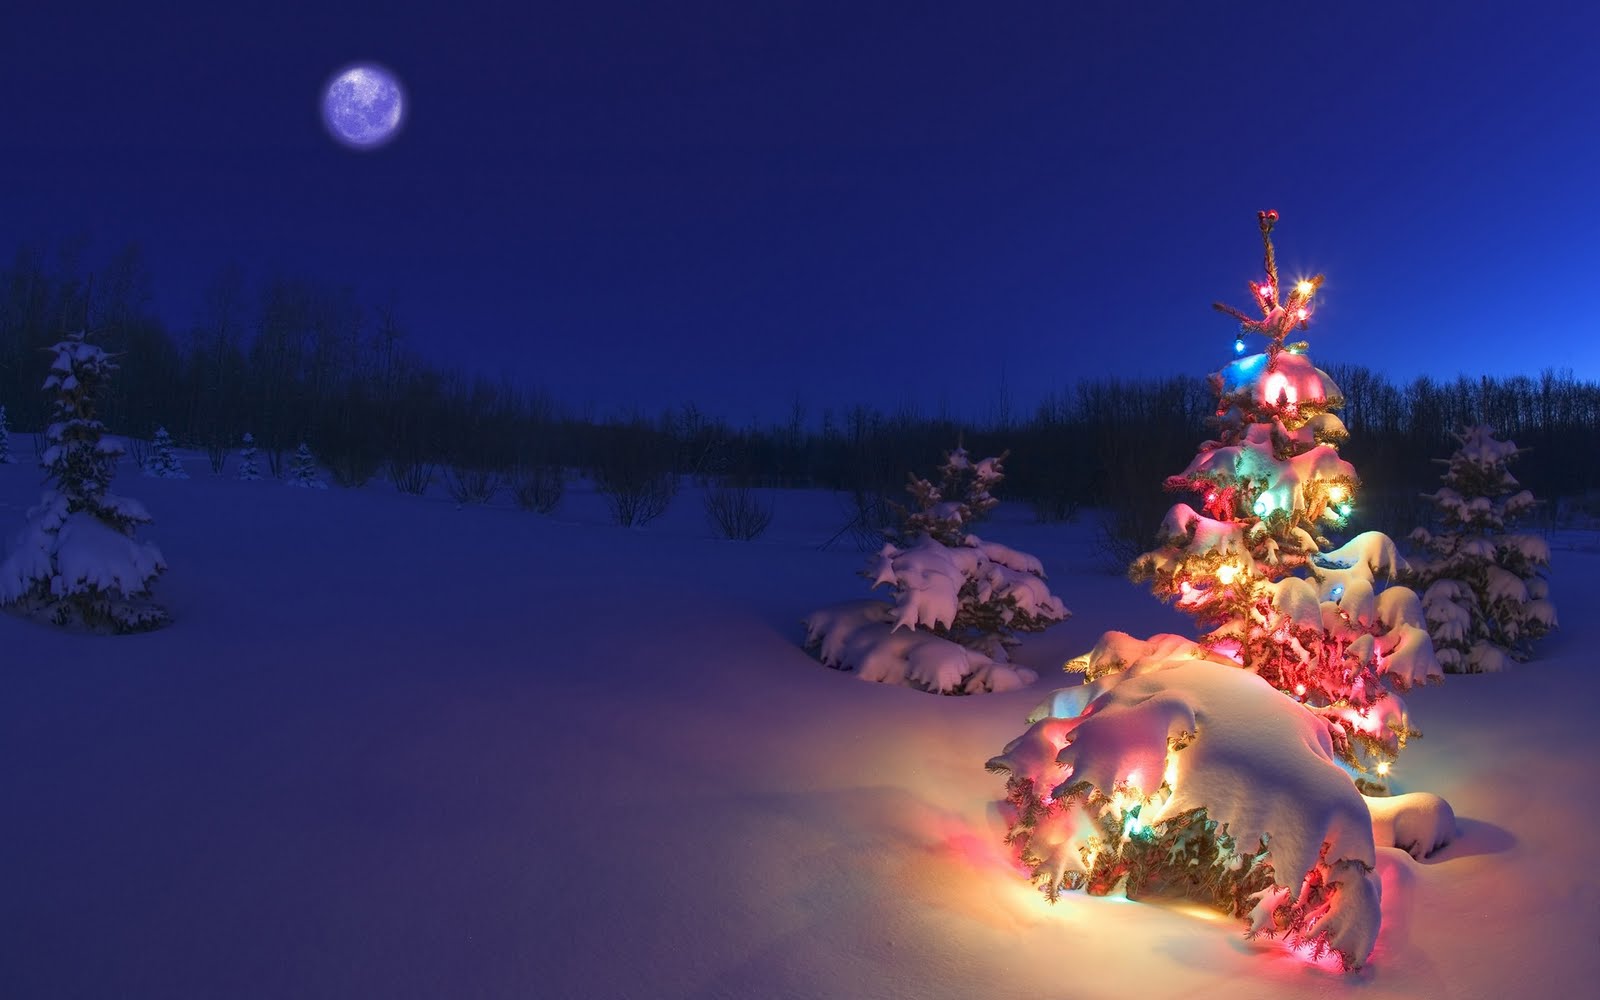 Descargar imagenes navideñas gratis Softonic - descargar imagenes de navidad gratis para pc